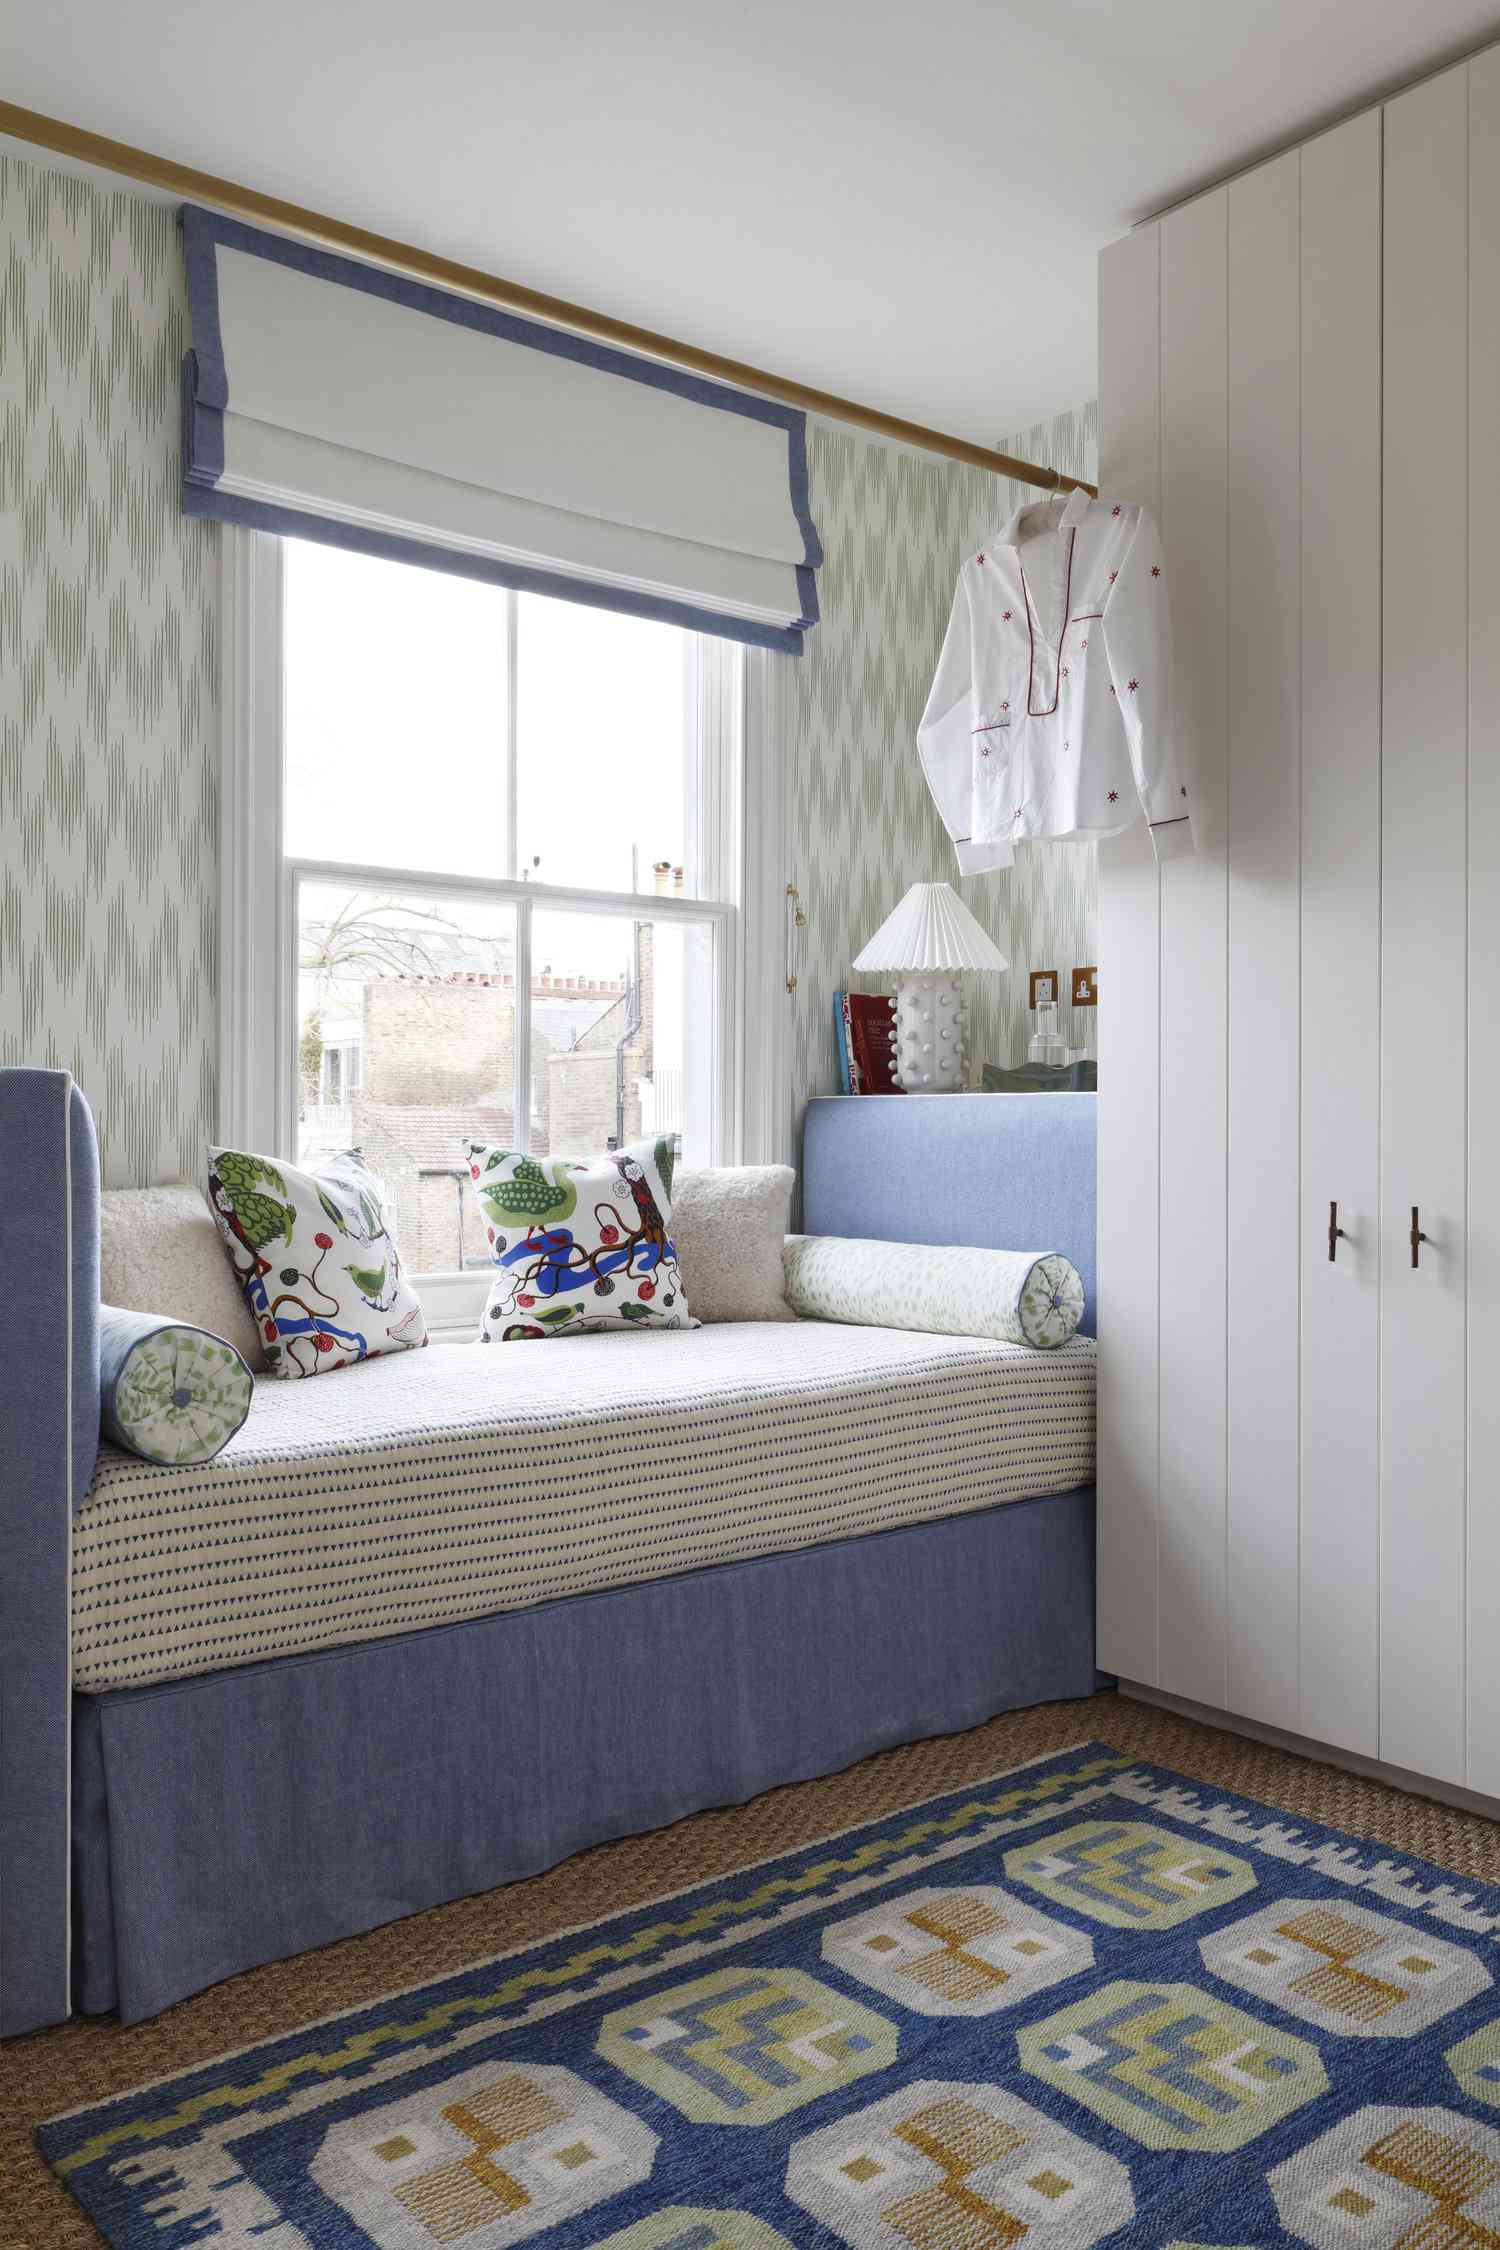 Dormitorio pequeño con sofá cama y empotrados con puertas shiplap